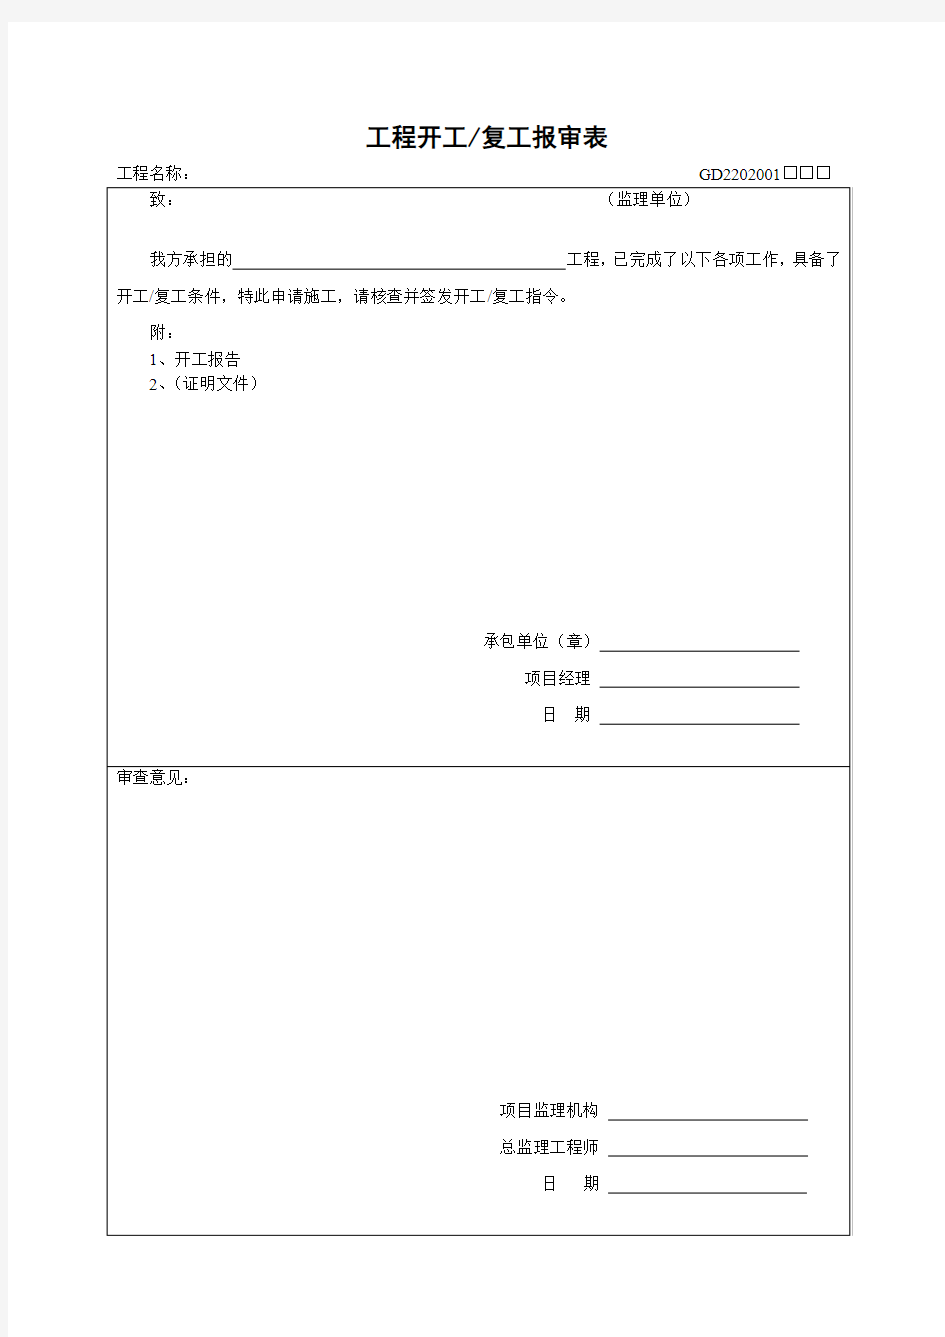 广东省监理资料表格 建筑资料 监理资料 省统表 资料 监理